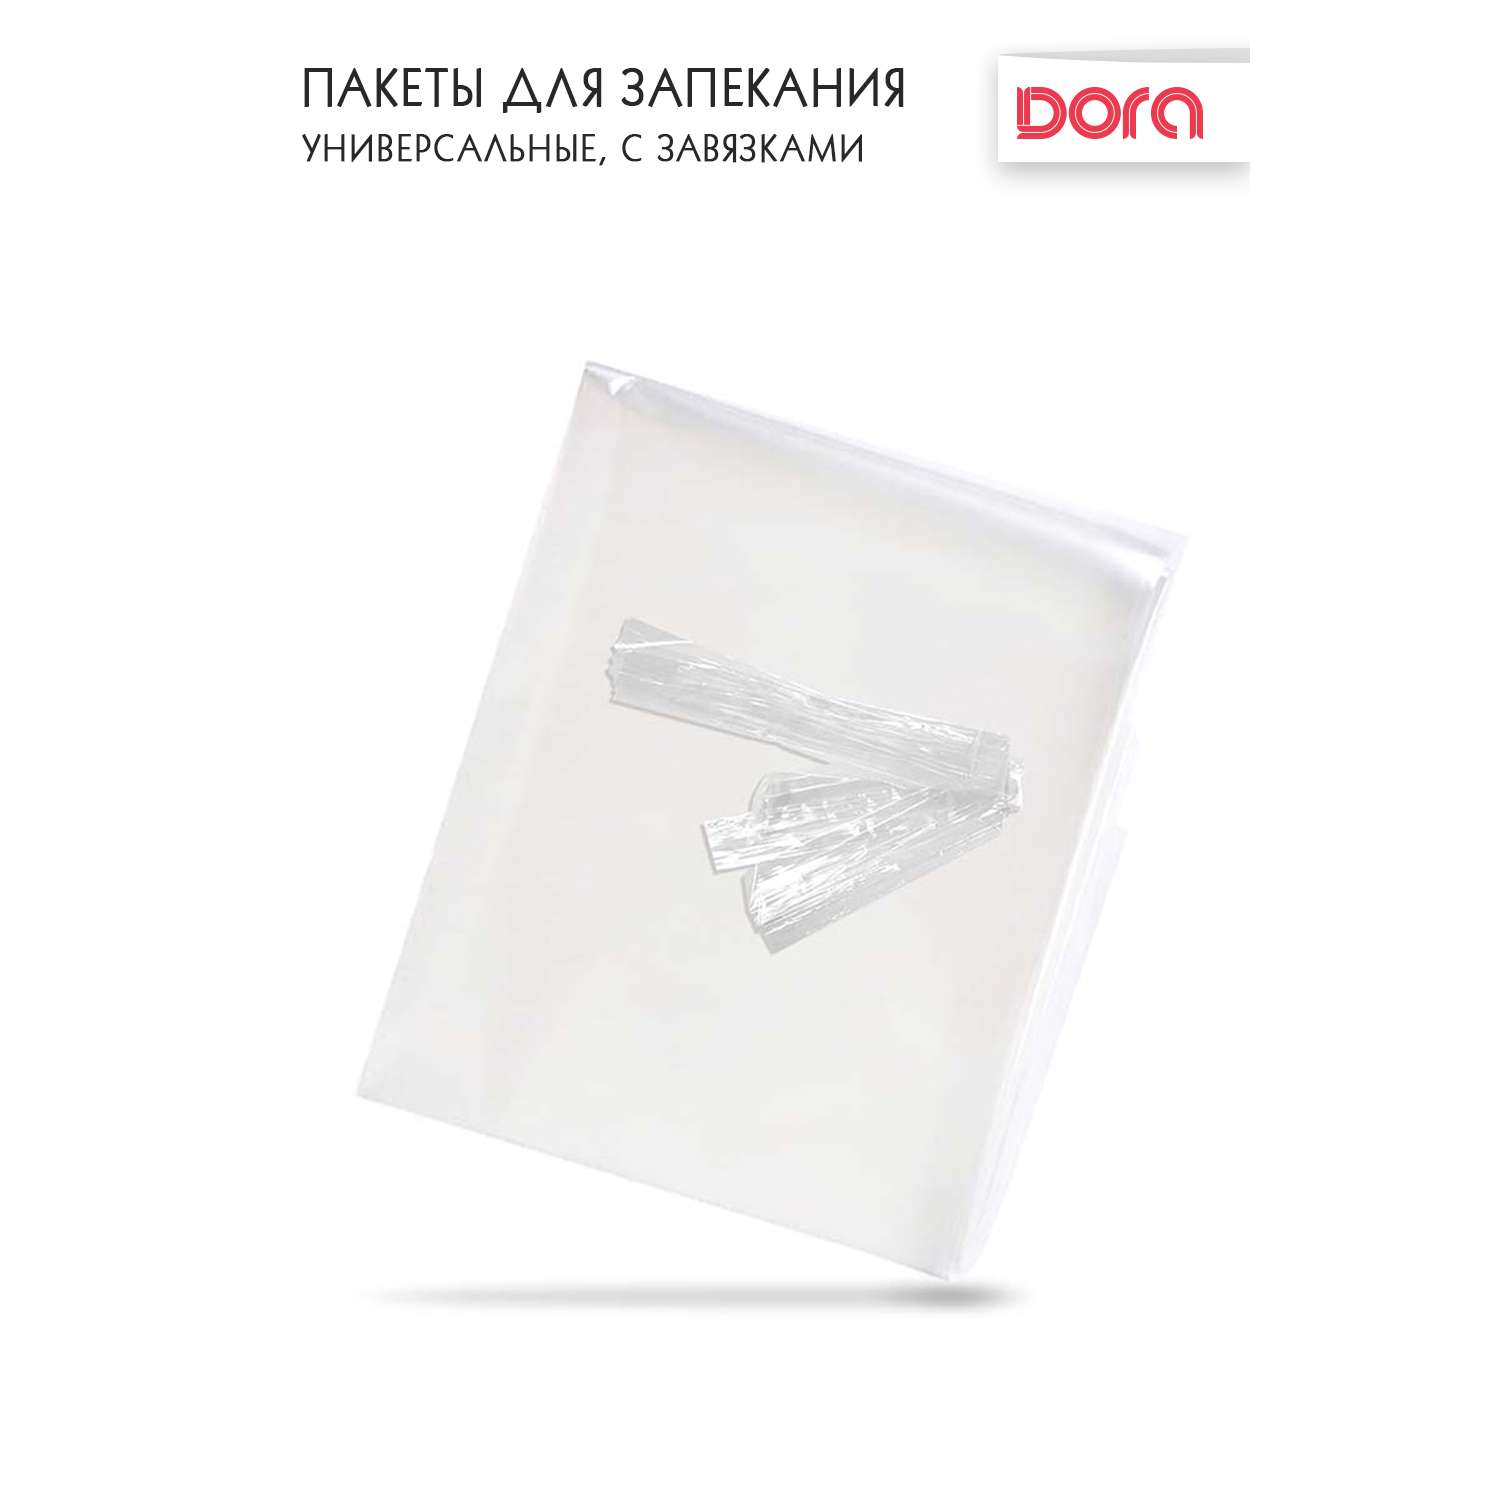 Пакеты для запекания DORA универсальные с завязками 30х40см 4 штуки - фото 4